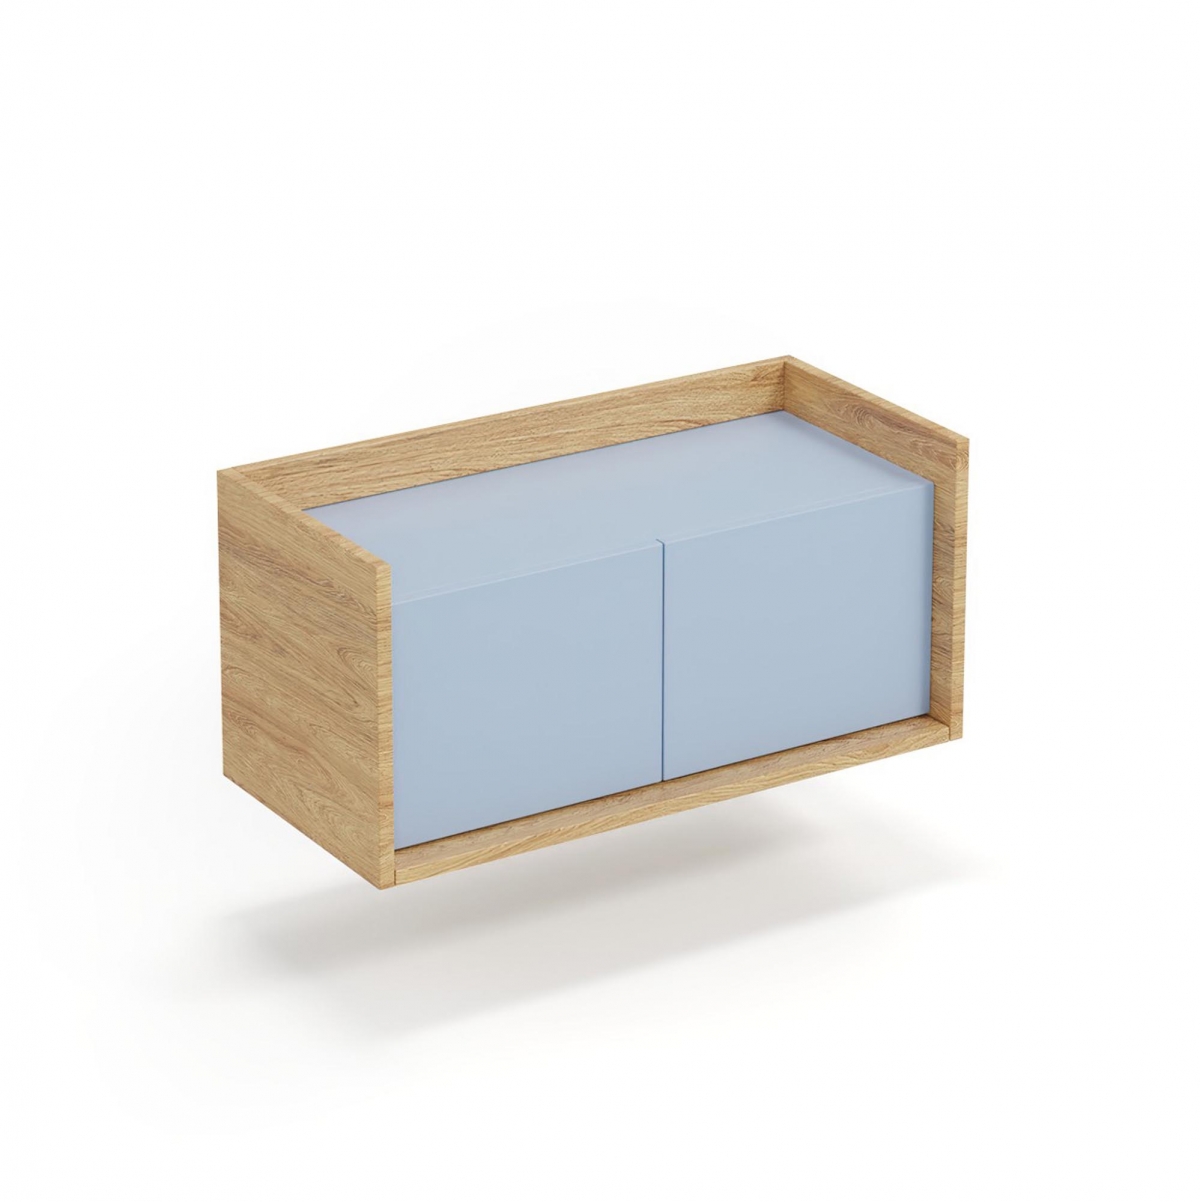 Skříňka Mobius 2D - hikora přírodní / modrý horizont mobius skříňka nízká 2D korpus: hikora přírodní, přední části - Modrý obzor